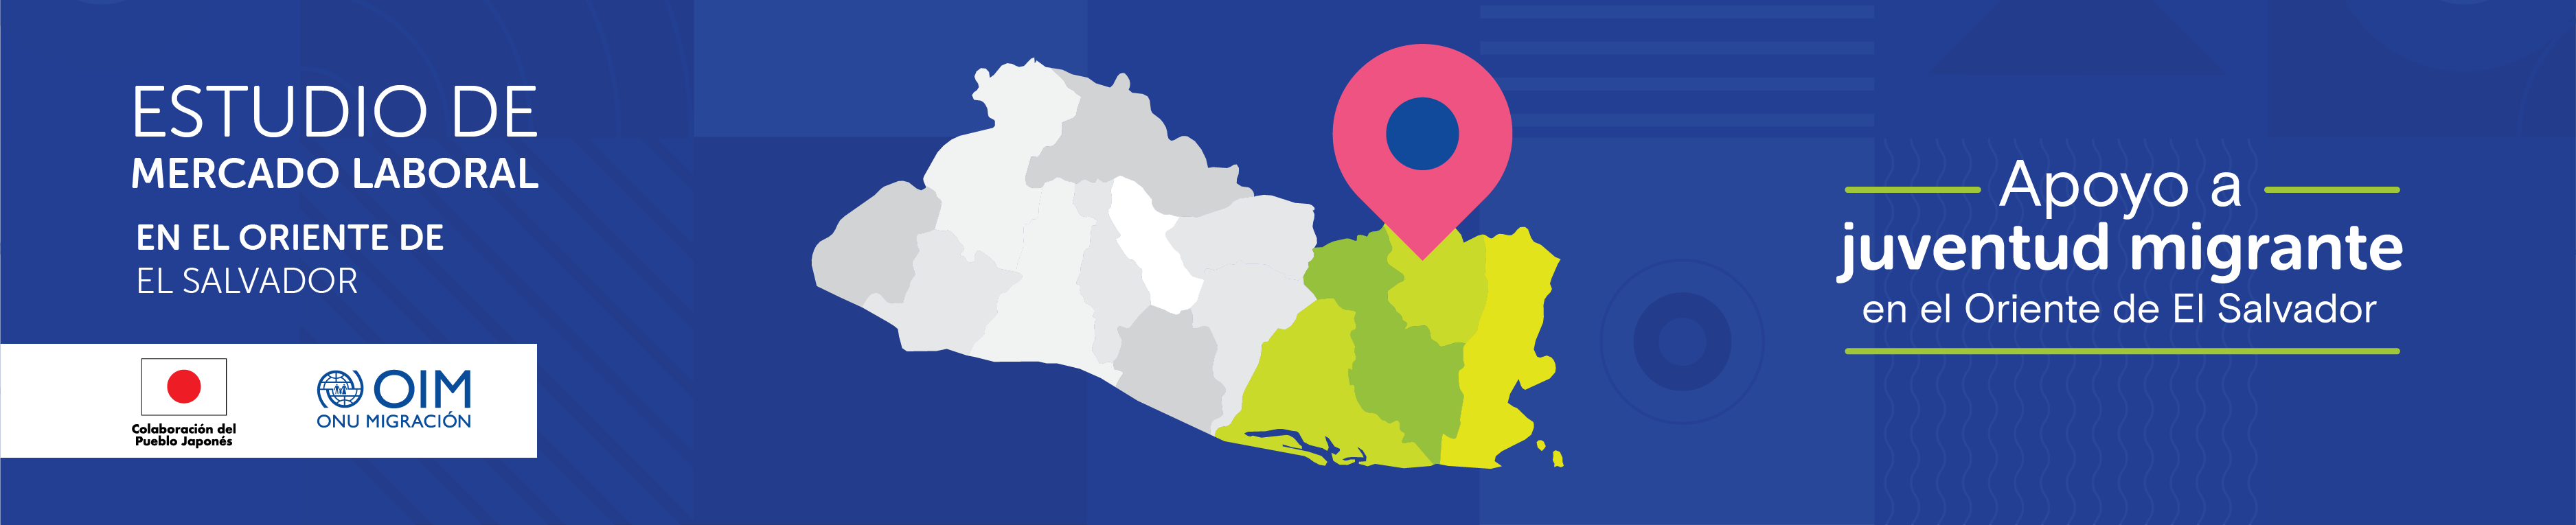 Estudio de mercado laboral en el oriente de El Salvador - Proyecto de Apoyo a Juventud Migrante en el Oriente de El Salvador